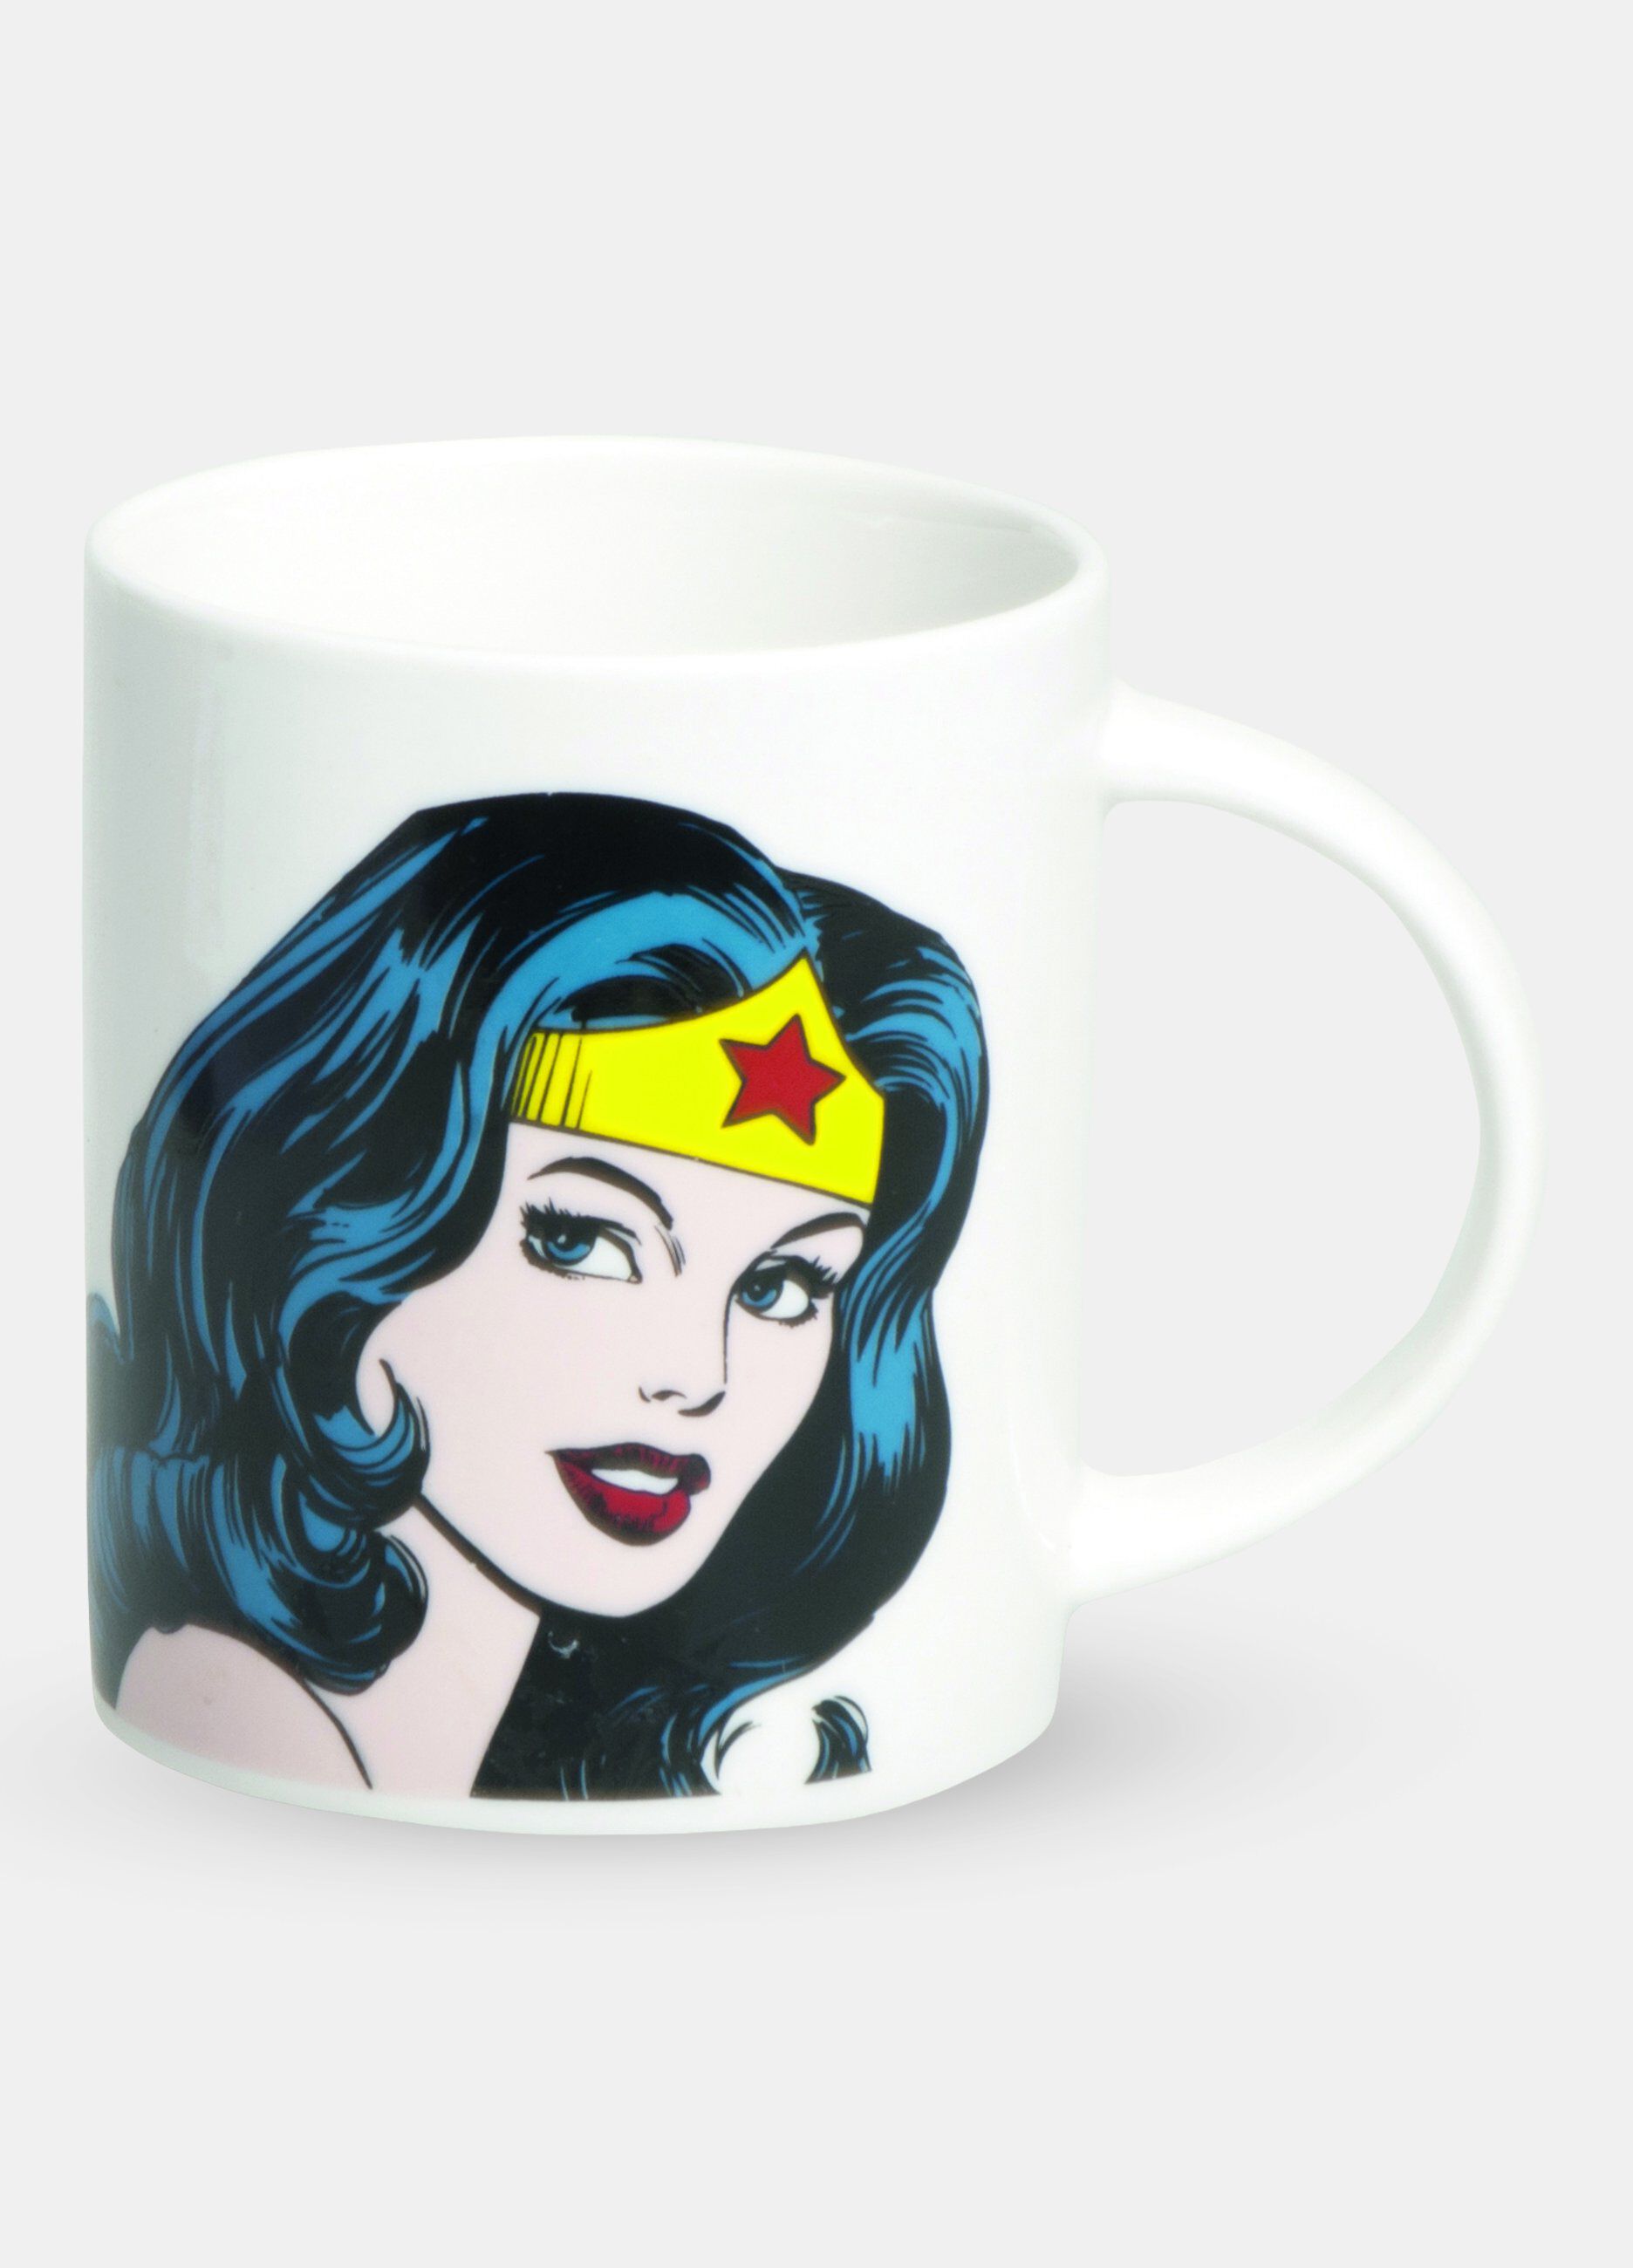 Tazza caffè Wonder Woman